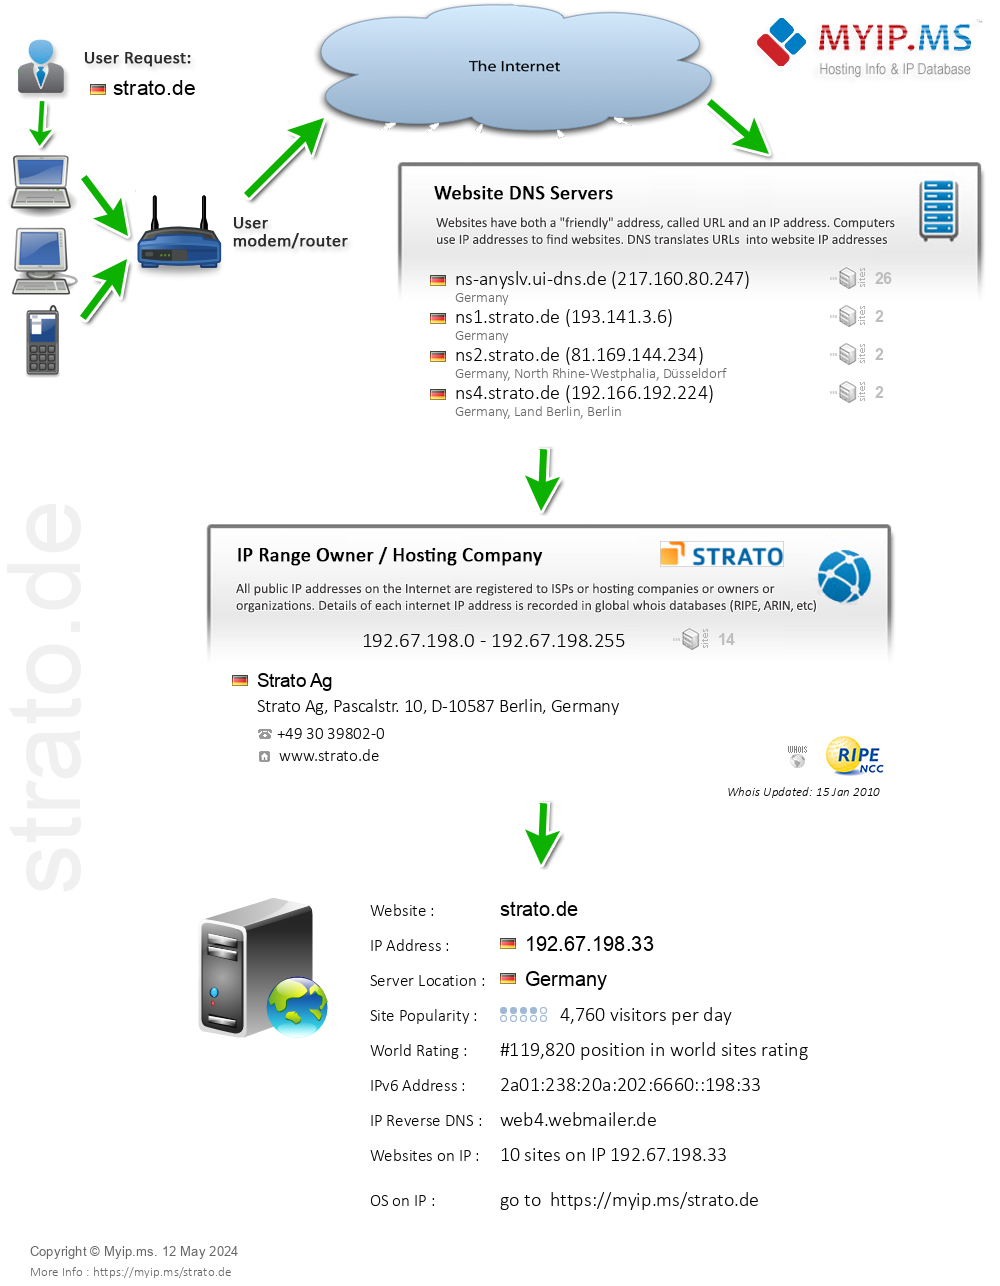 Strato.de - Website Hosting Visual IP Diagram